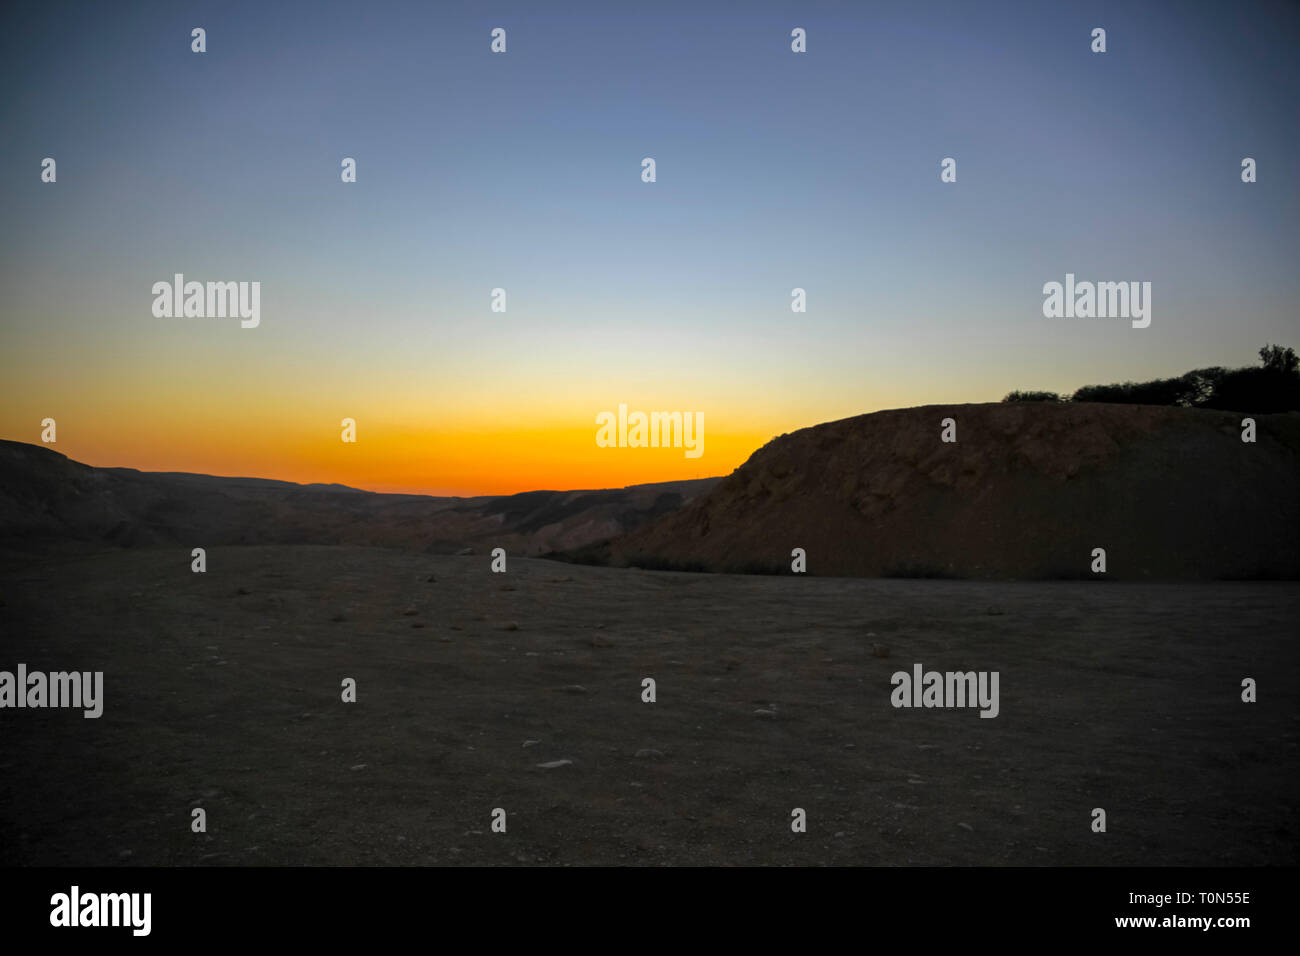 Desert sunset Photographed in Israel, Negev desert Stock Photo